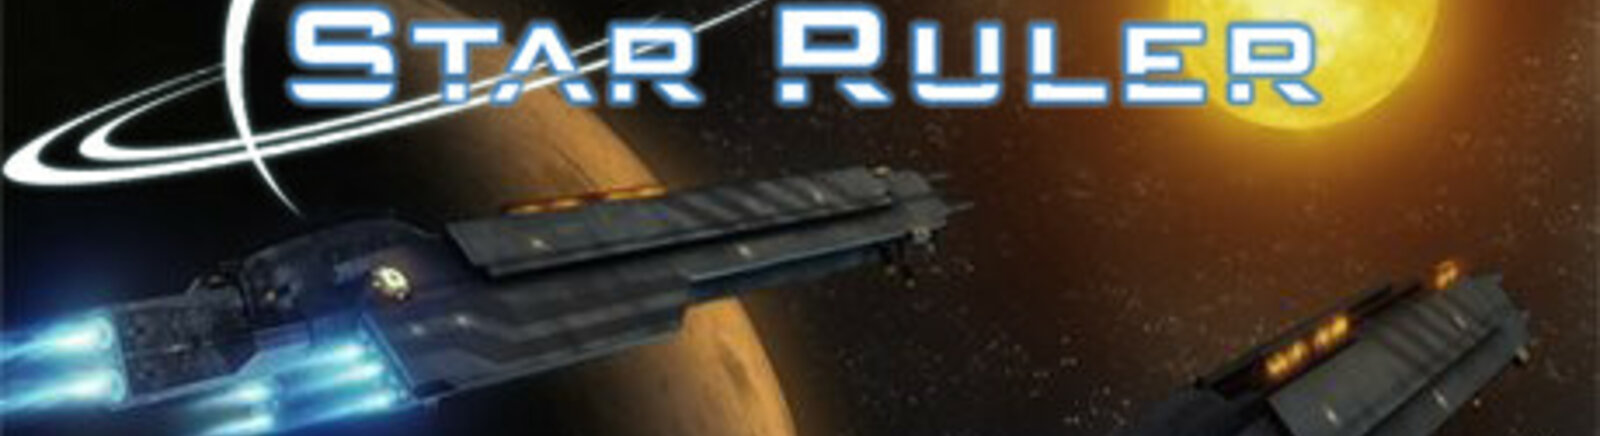 Дата выхода Star Ruler  на PC в России и во всем мире